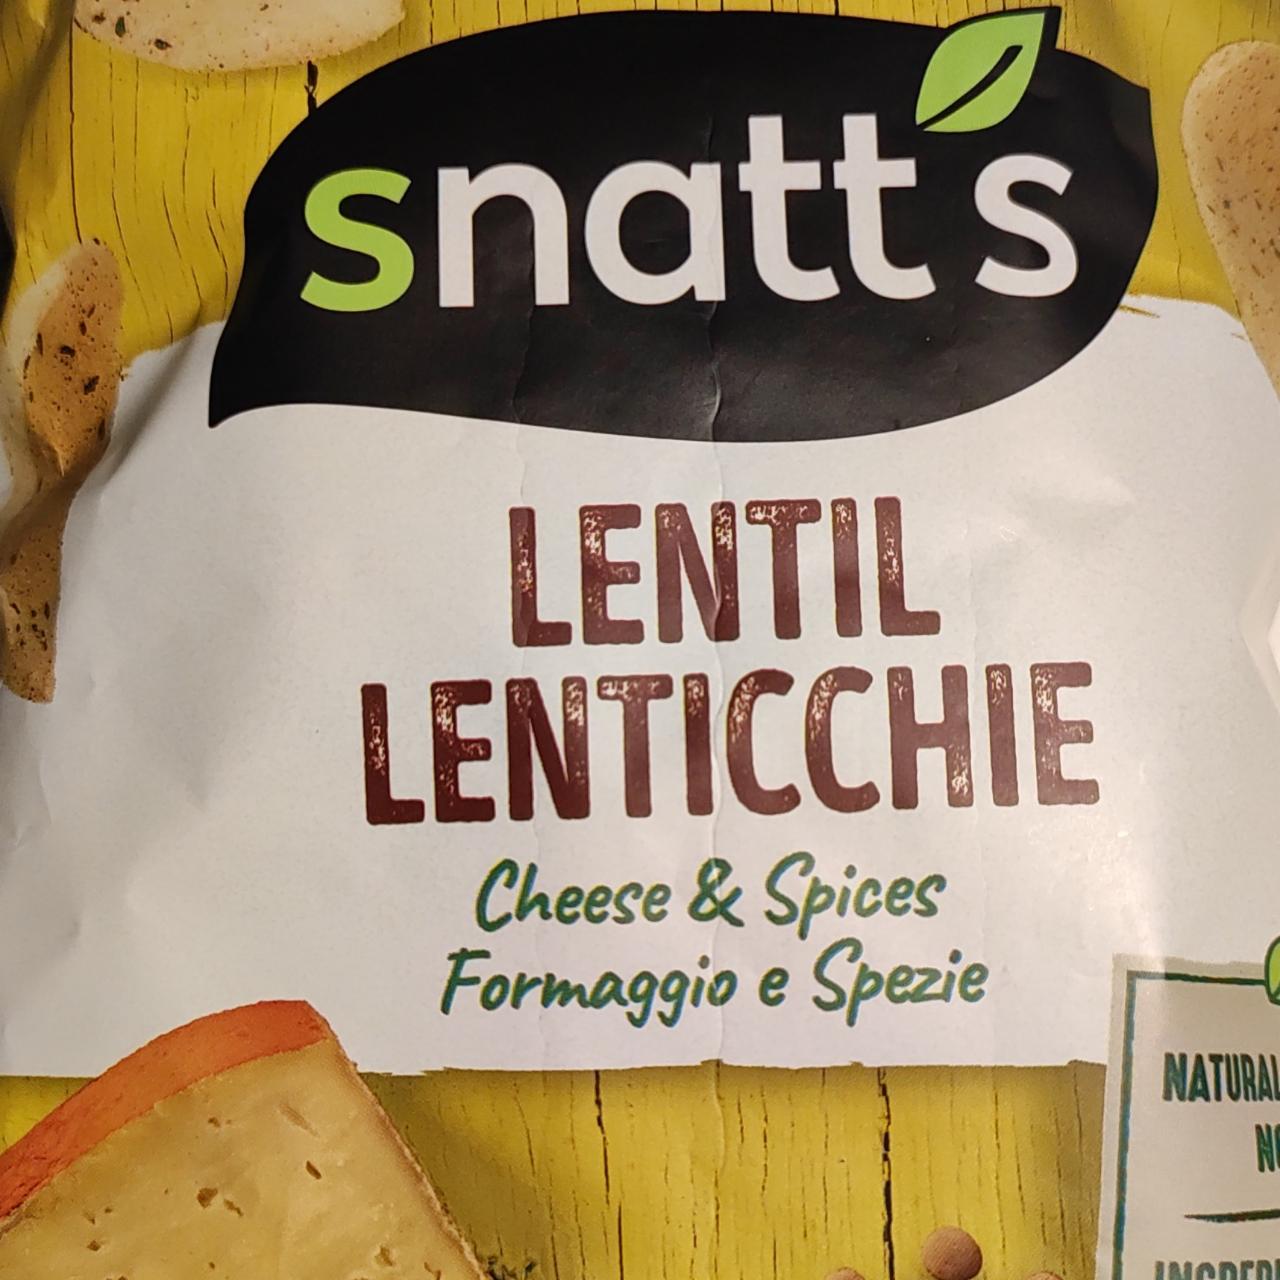 Fotografie - Lentil Chips cheese & herbs Snatt's